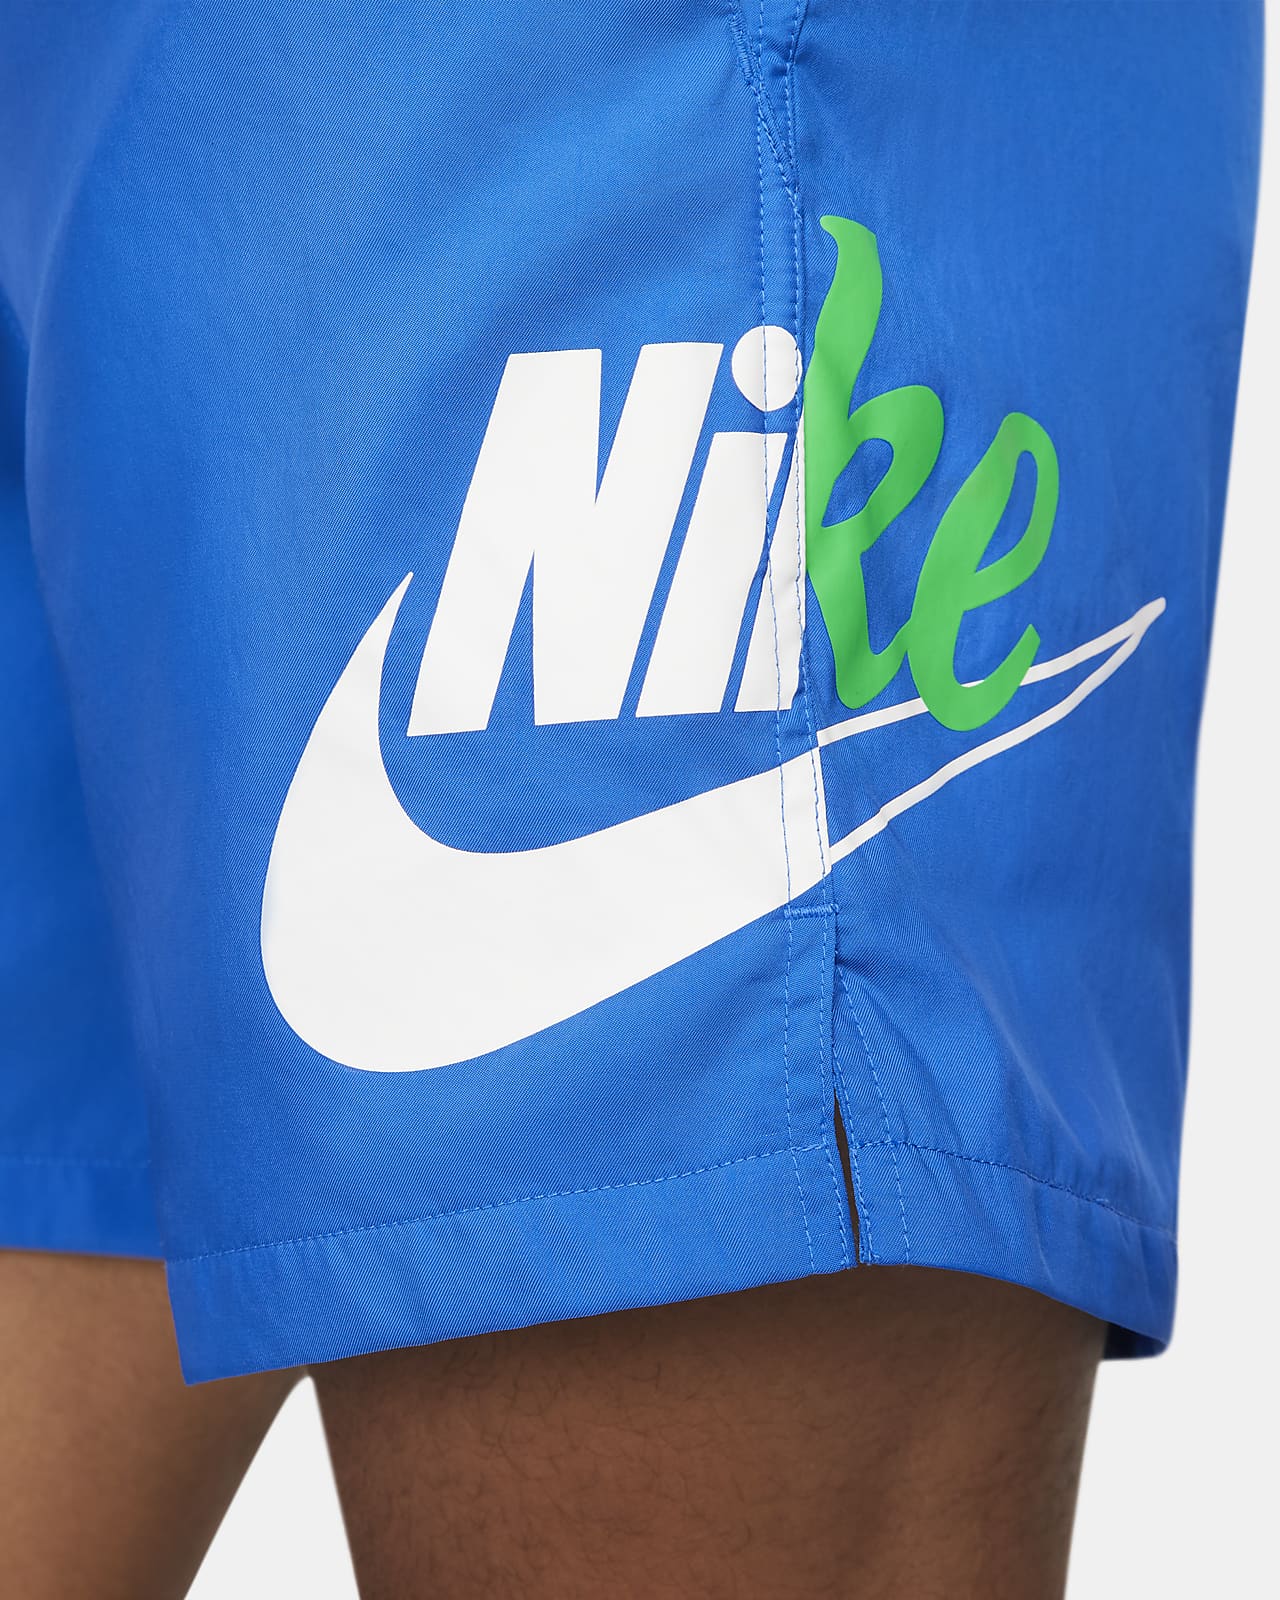 Nike Sportswear Sport Essentials+ Men's Woven Flow Shorts. Nike VN